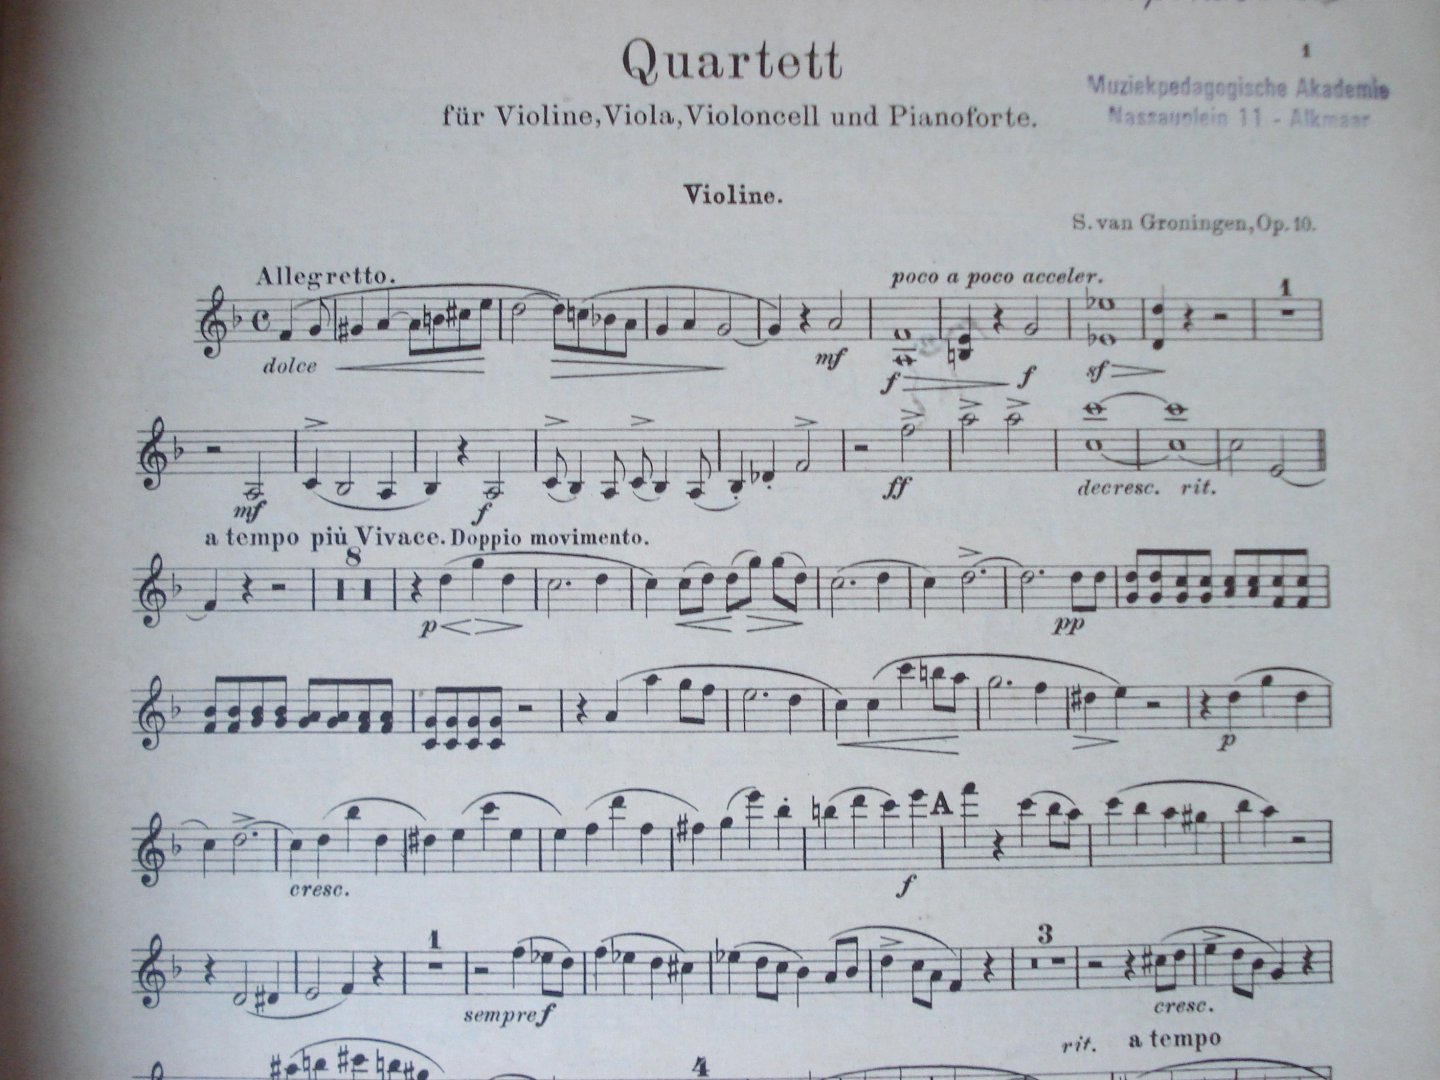 Groningen, S. van - Quartett fur Pianoforte, Violine, Bratsche und Violoncell in F dur